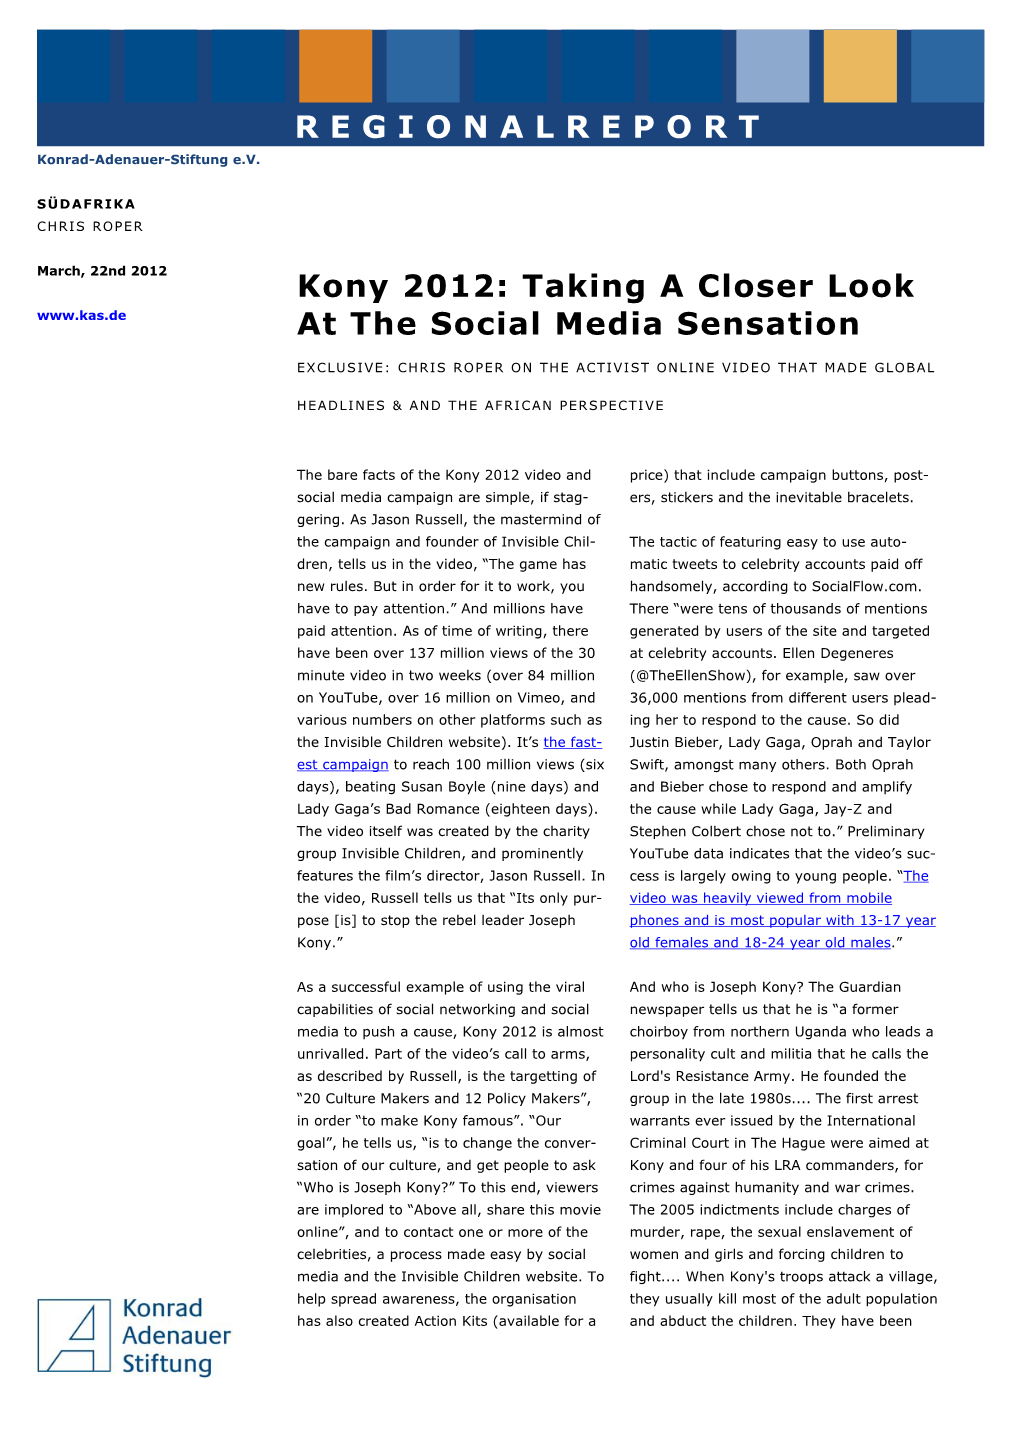 Kony 2012: Taking a Closer Look at the Social Media Sensation